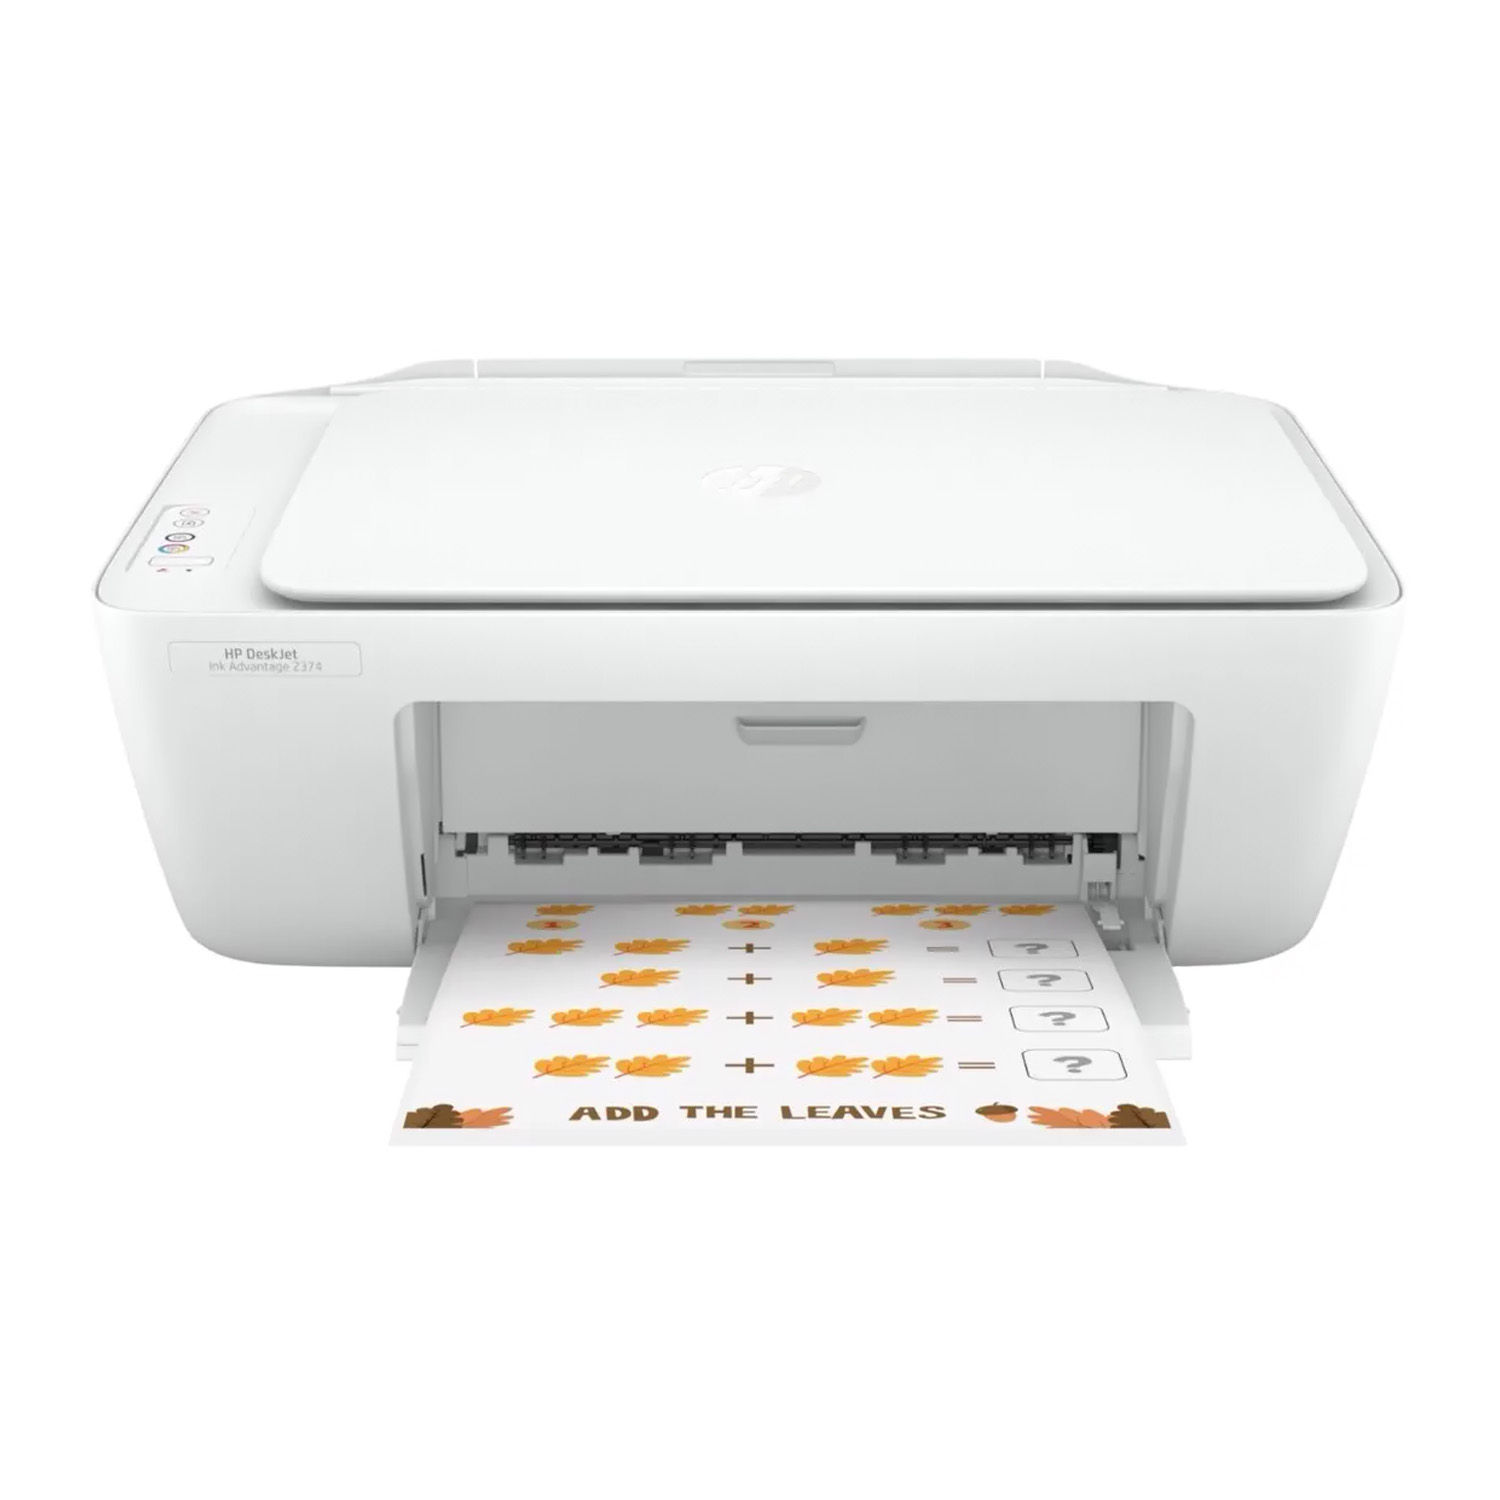 Impresora Multifuncional HP Deskjet 2374 (7WQ03A), inyección de tinta